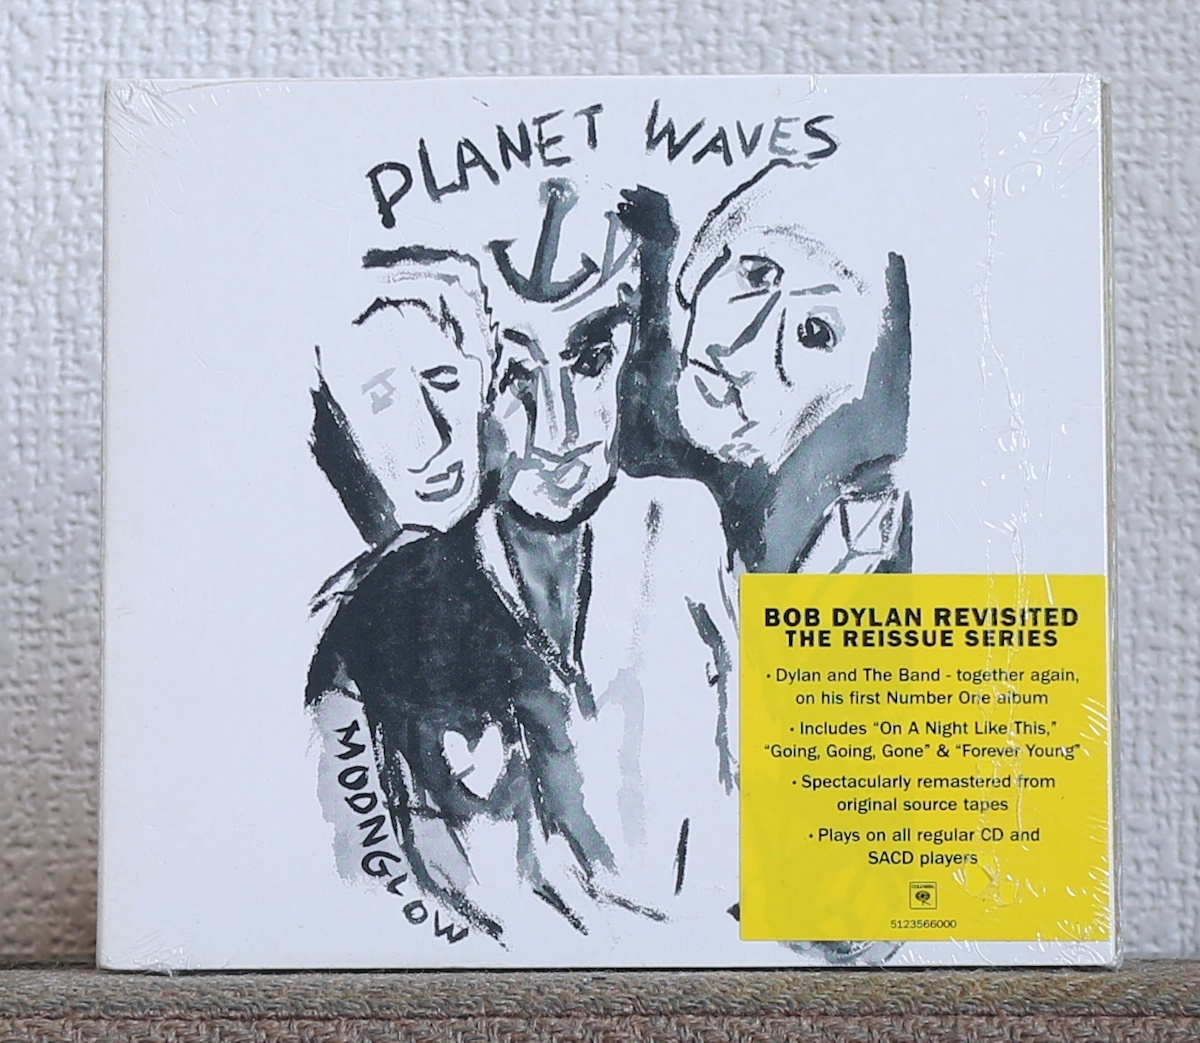 品薄/高音質CD/SACD/ボブ・ディラン/ザ・バンド/プラネット・ウェイヴズ/Bob Dylan/The Band/Planet Waves_画像1